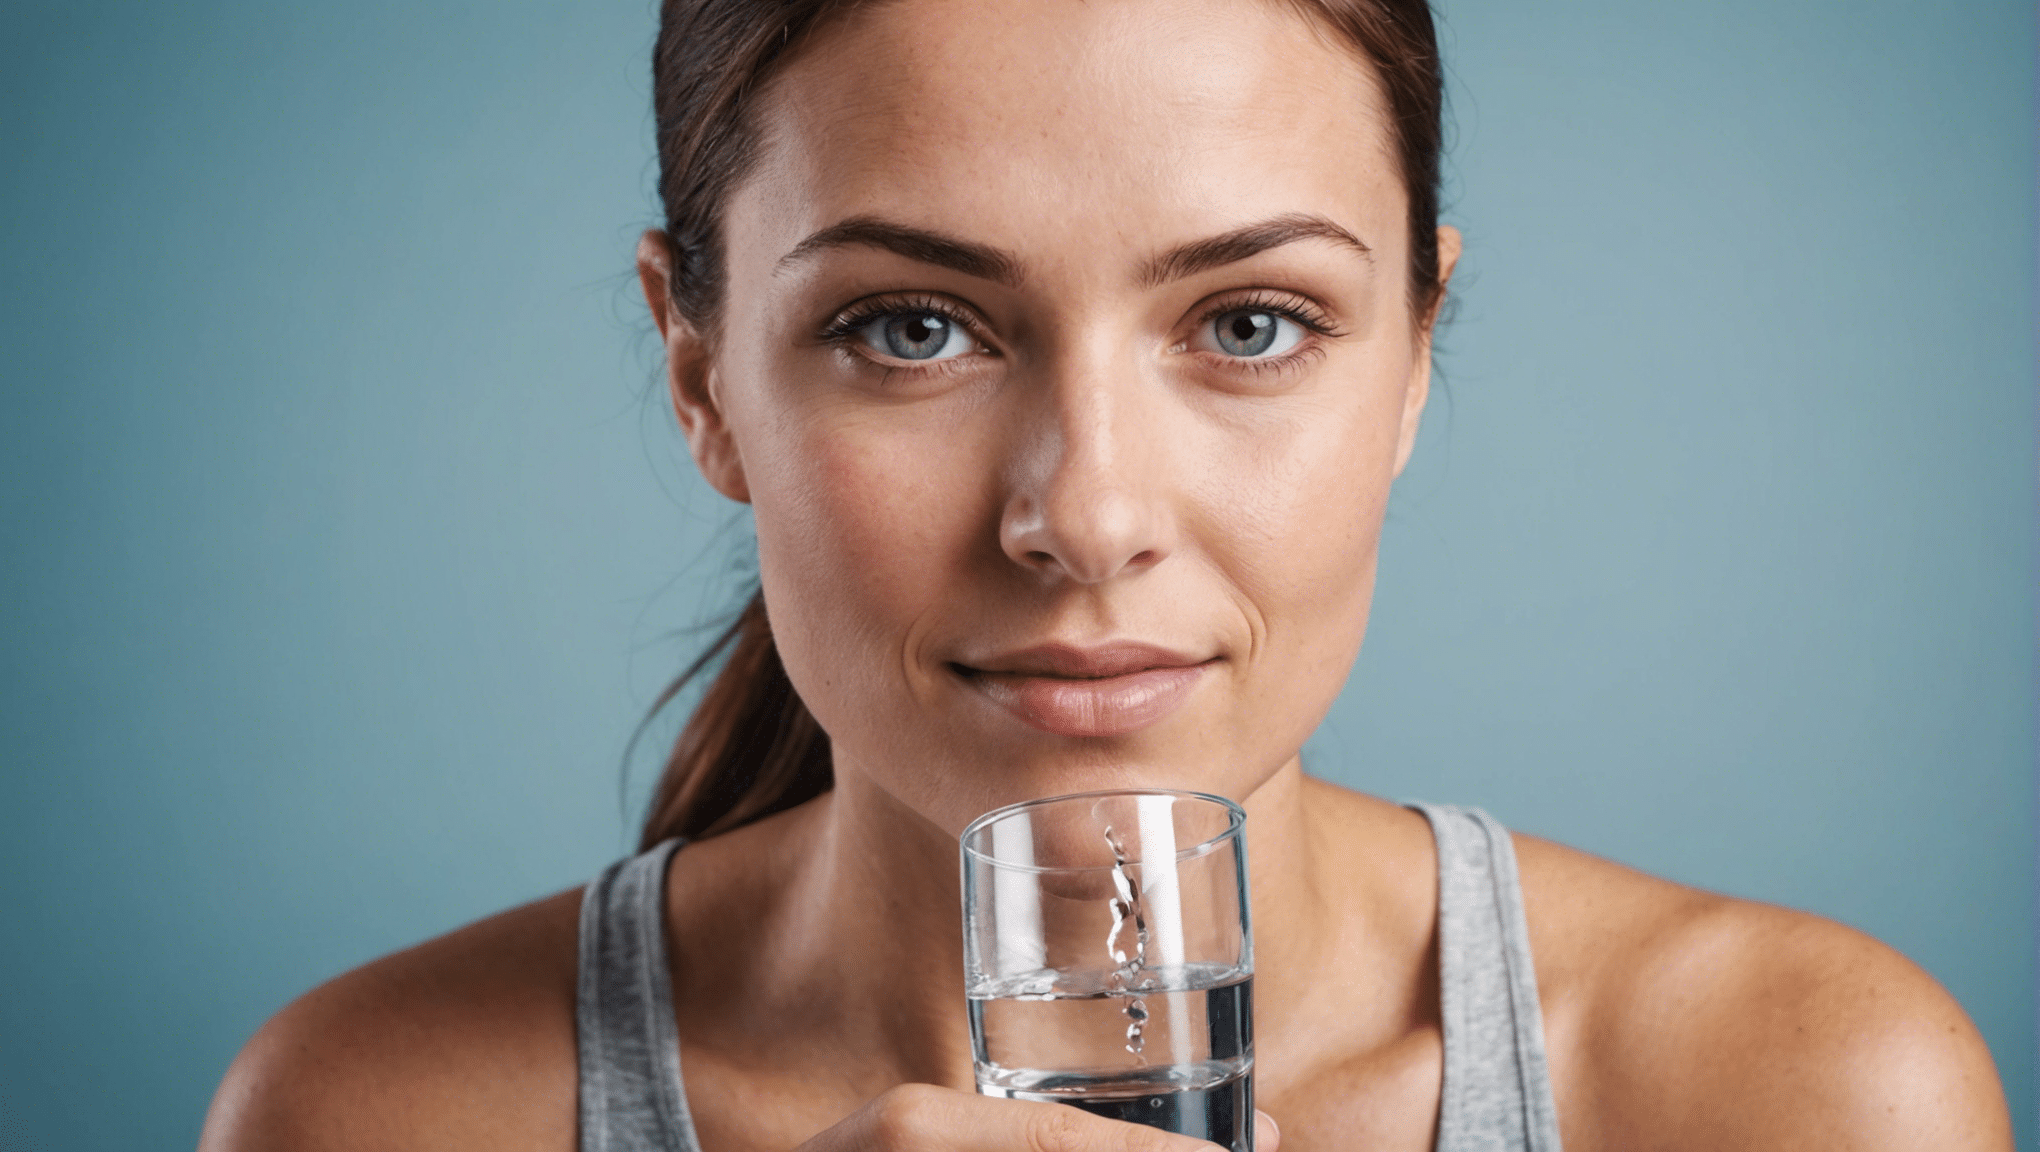 découvrez des conseils pour assurer une hydratation adéquate et maintenir une bonne santé avec nos astuces et recommandations.